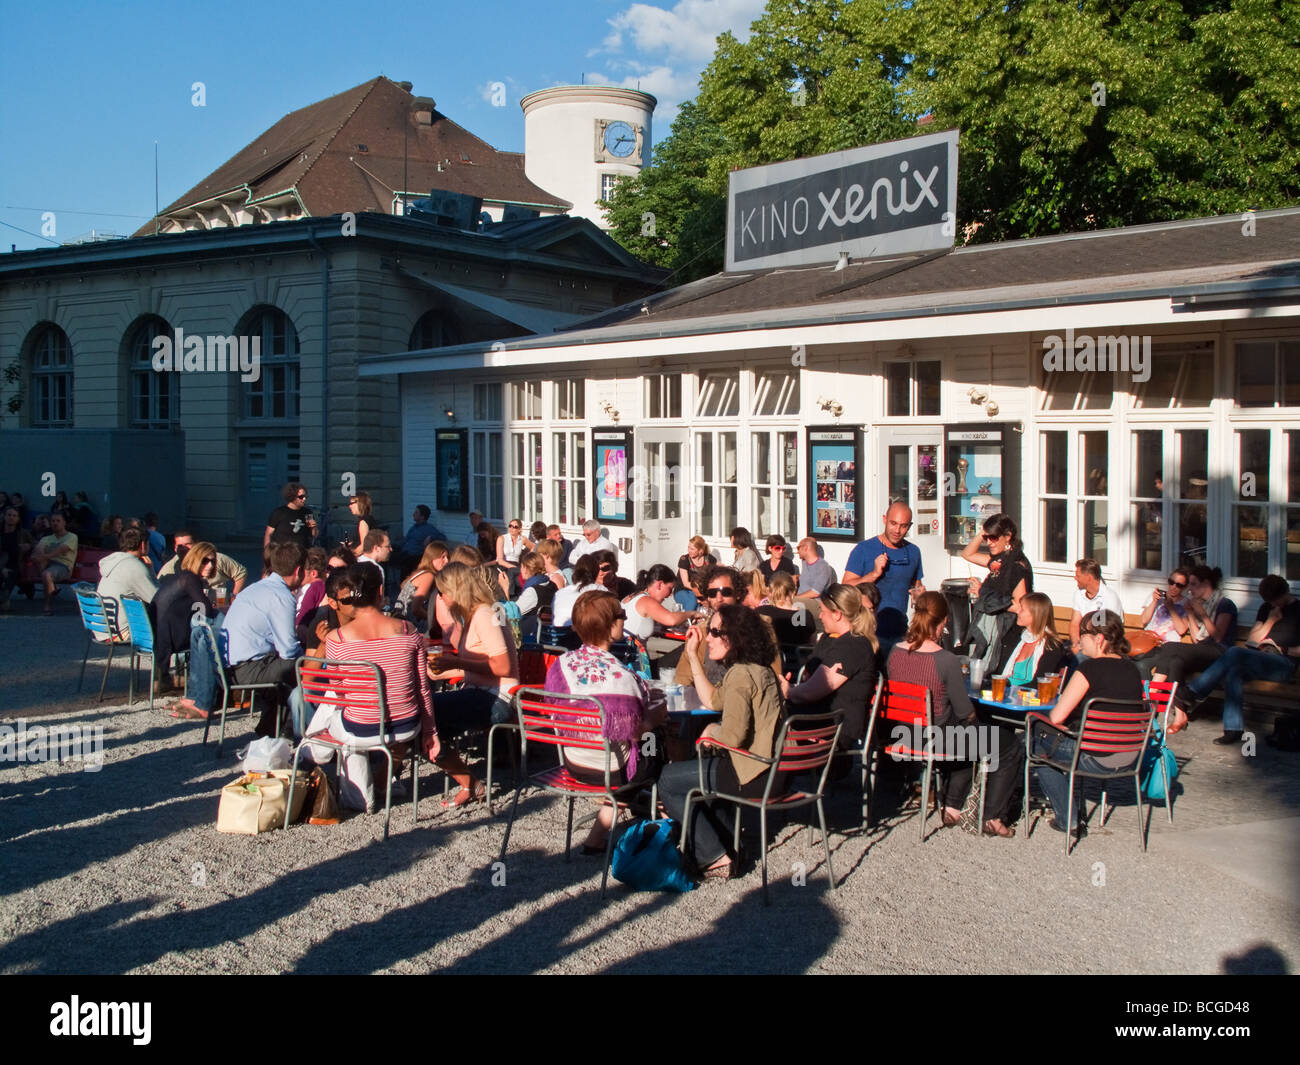 Kanzlei Xenix Bar and Street Cafe in summer Zurich Switzerland Stock Photo